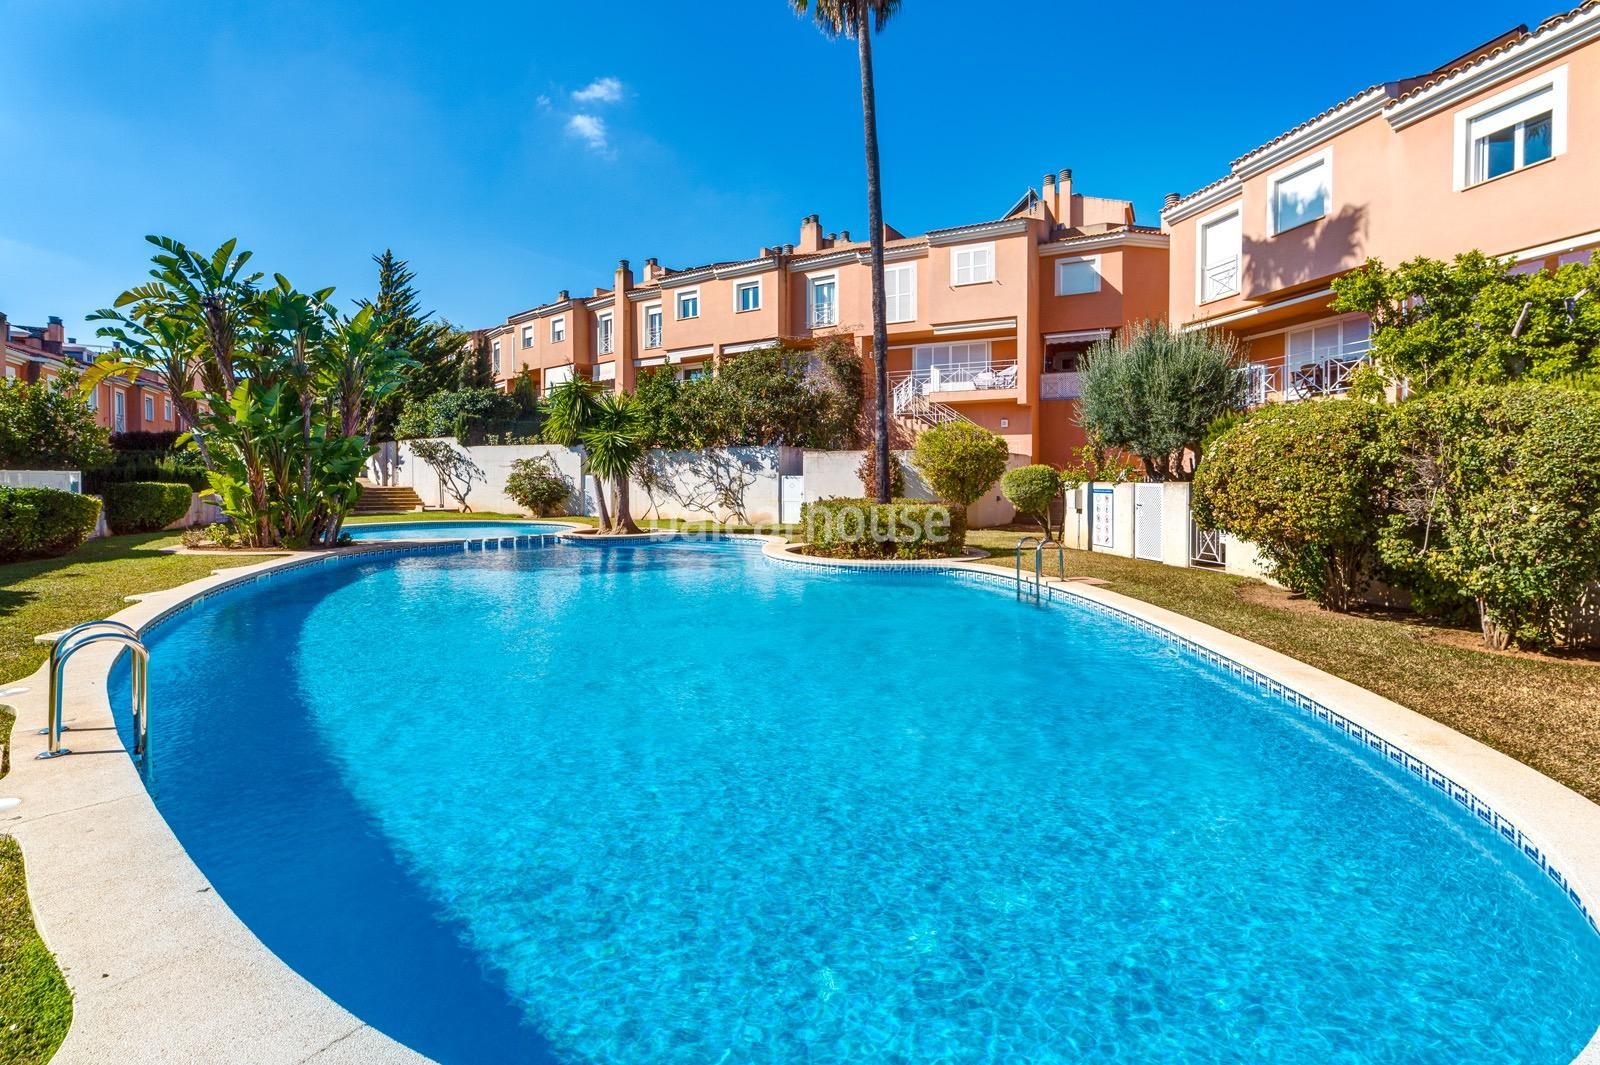 Luminoso y tranquilo chalet adosado con piscina y jardines en la zona colegios de Palma